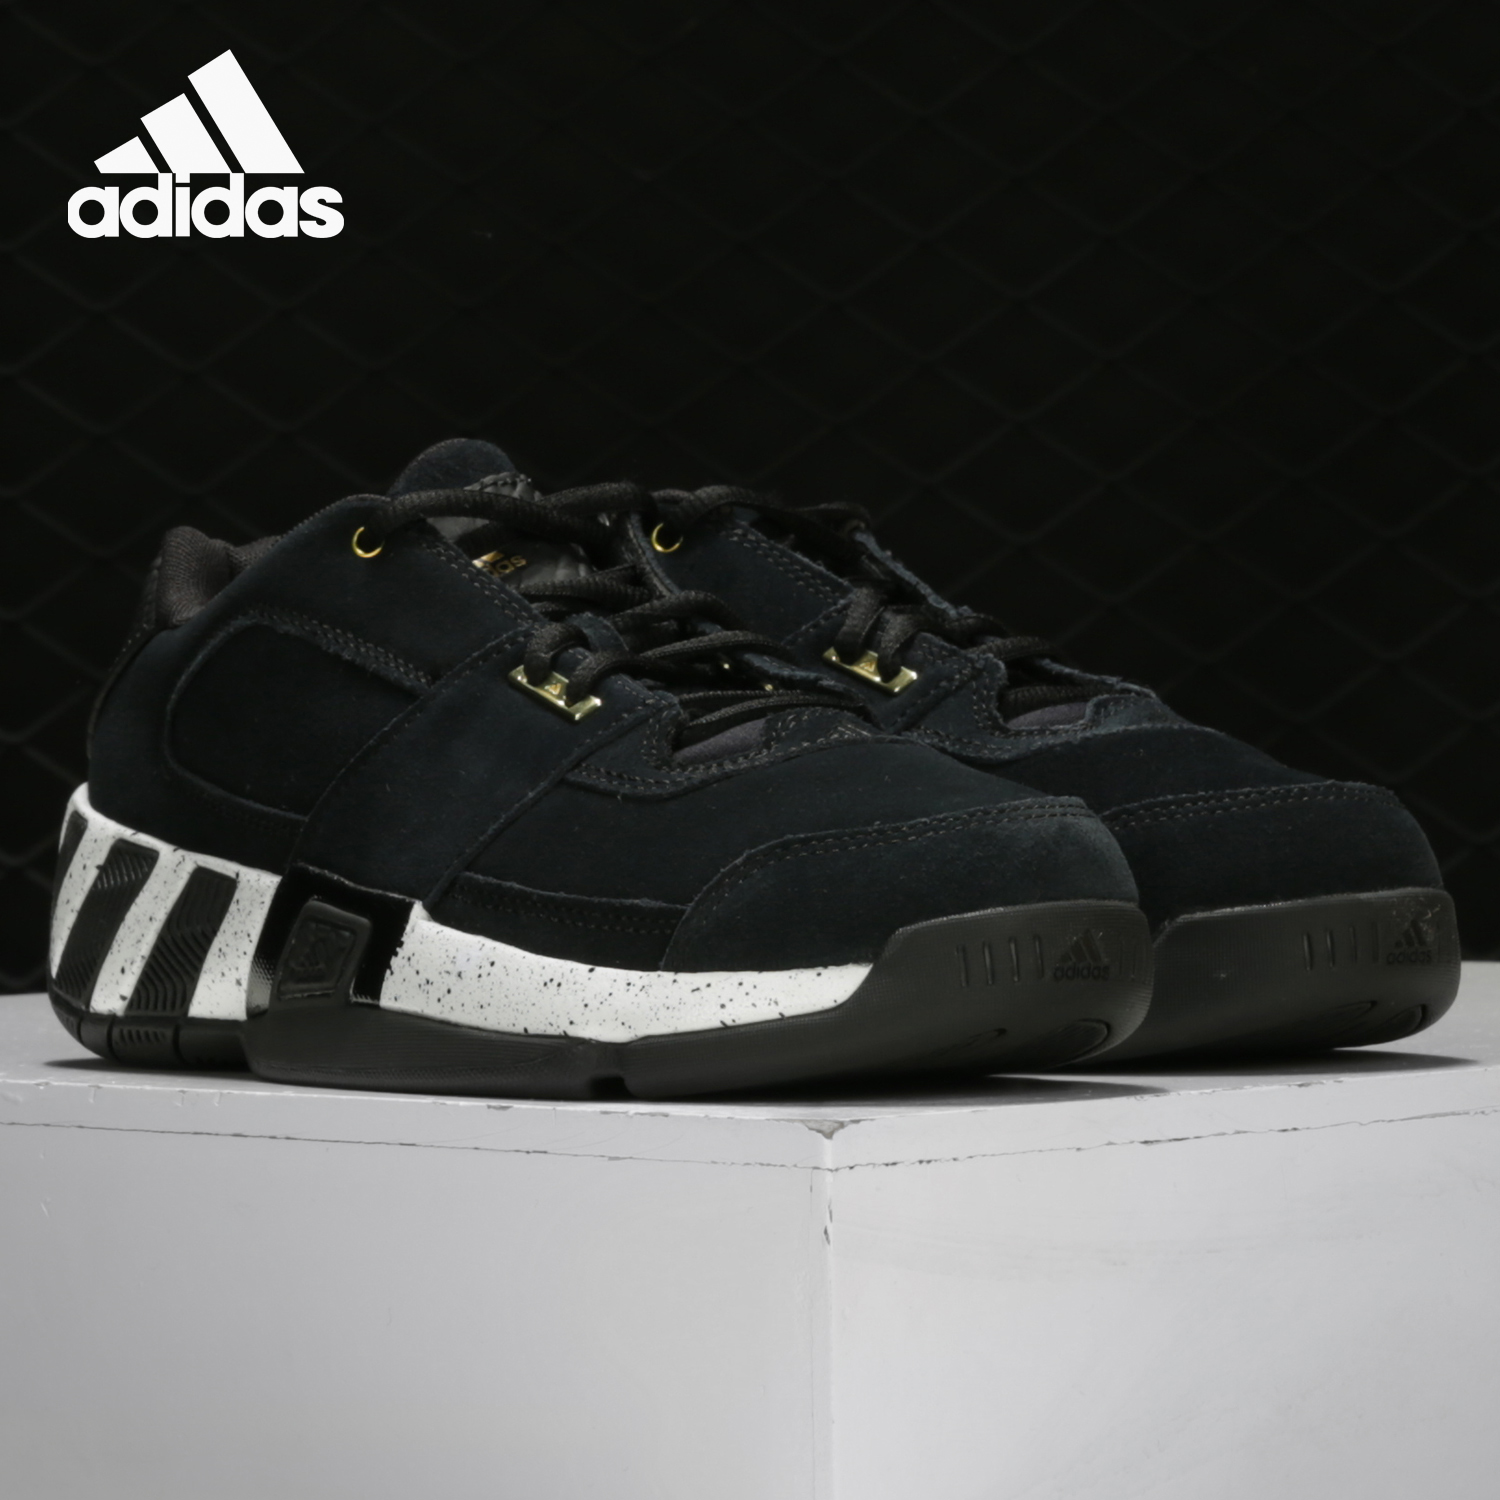 Adidas/阿迪达斯正品冬季新款阿里纳斯男子运动实战篮球鞋 EH2391